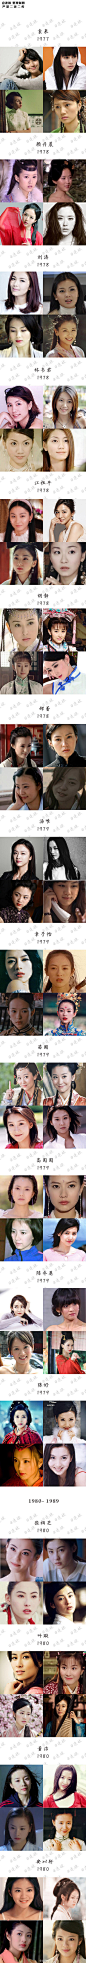 150位华人女演员（1950—1999年出生）颜值一览表 ，感受一下不同年代的美颜盛世。不仅是审美的变迁，更是时尚的轮回。